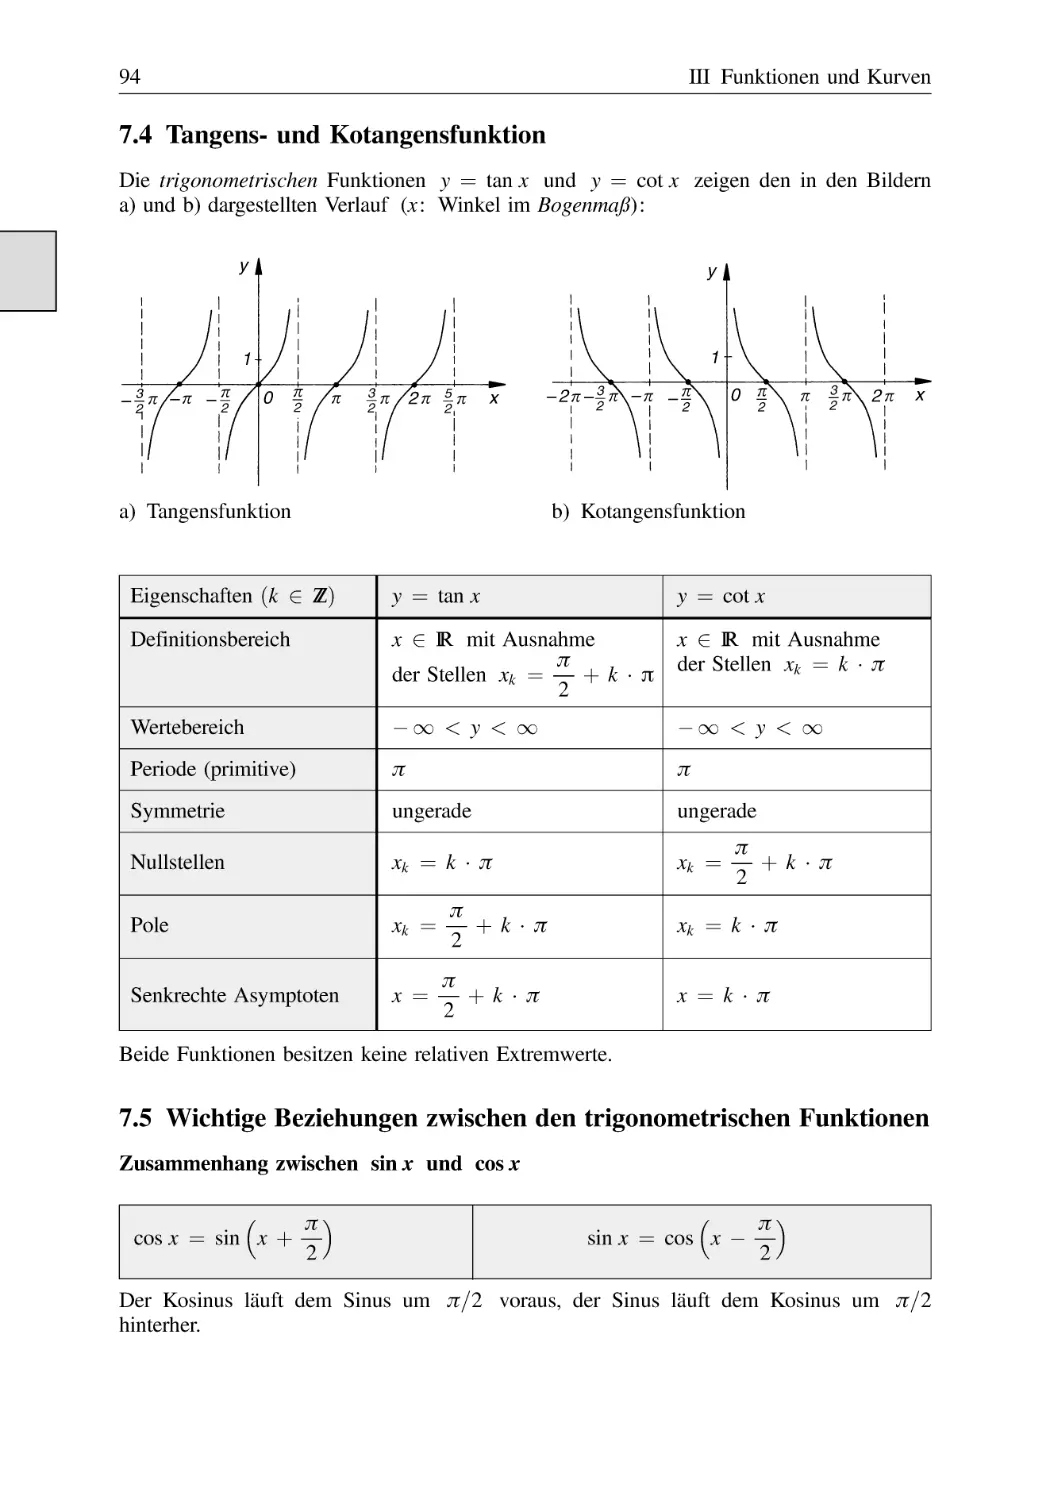 7.4 Tangens- und Kotangensfunktion
7.5 Wichtige Beziehungen zwischen den trigonometrischen Funktionen